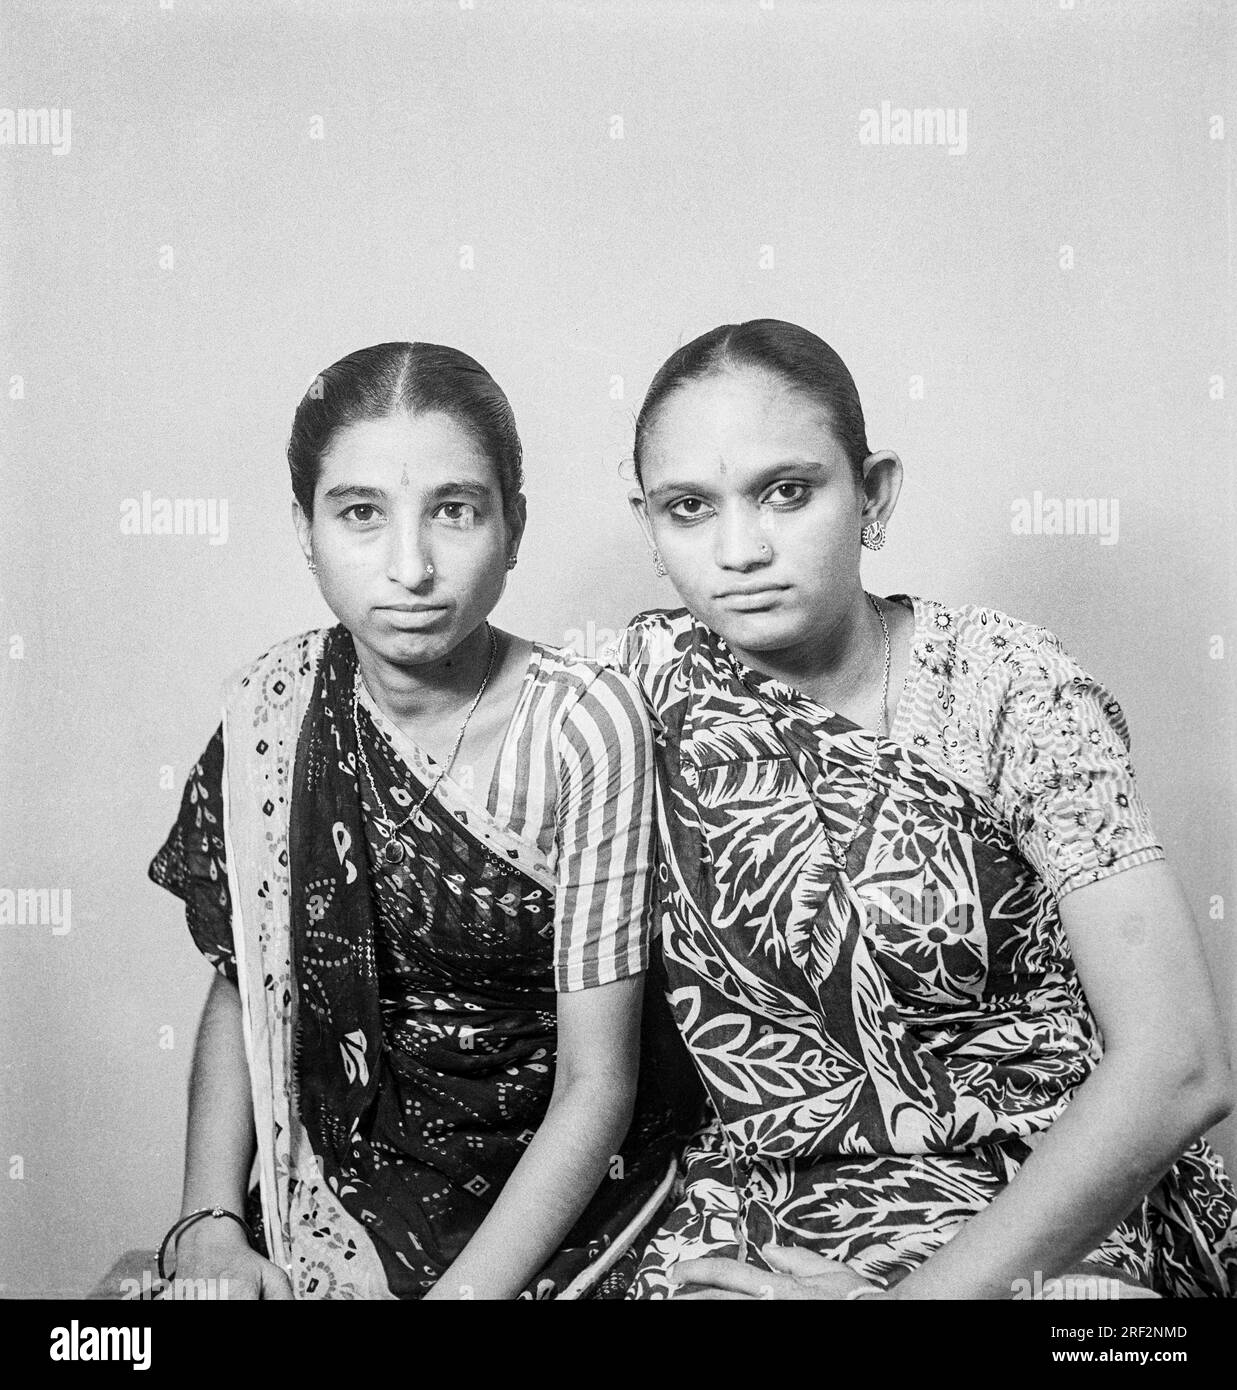 Vieux vintage des années 1900 photo de studio noir et blanc de sœurs jumelles indiennes portant Saree India 1940s. Banque D'Images